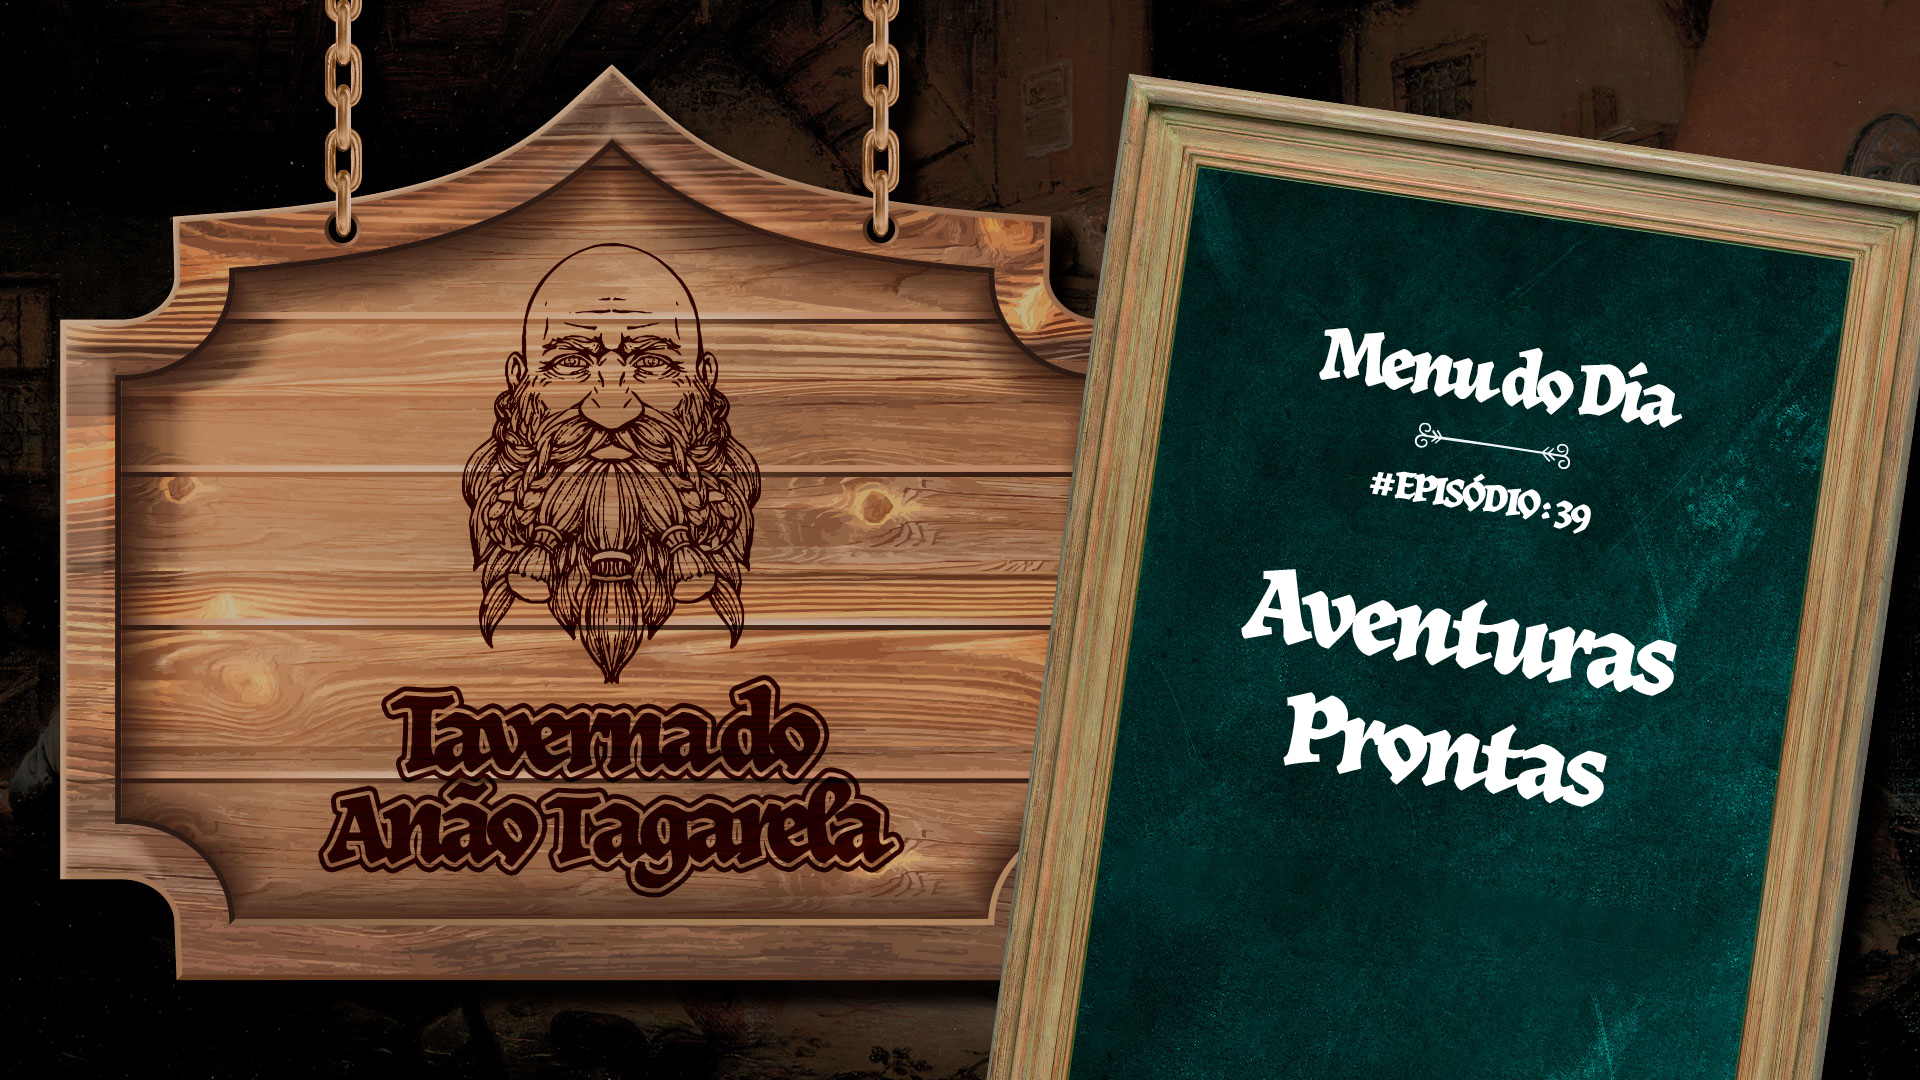 Aventuras Prontas – Taverna do Anão Tagarela #39